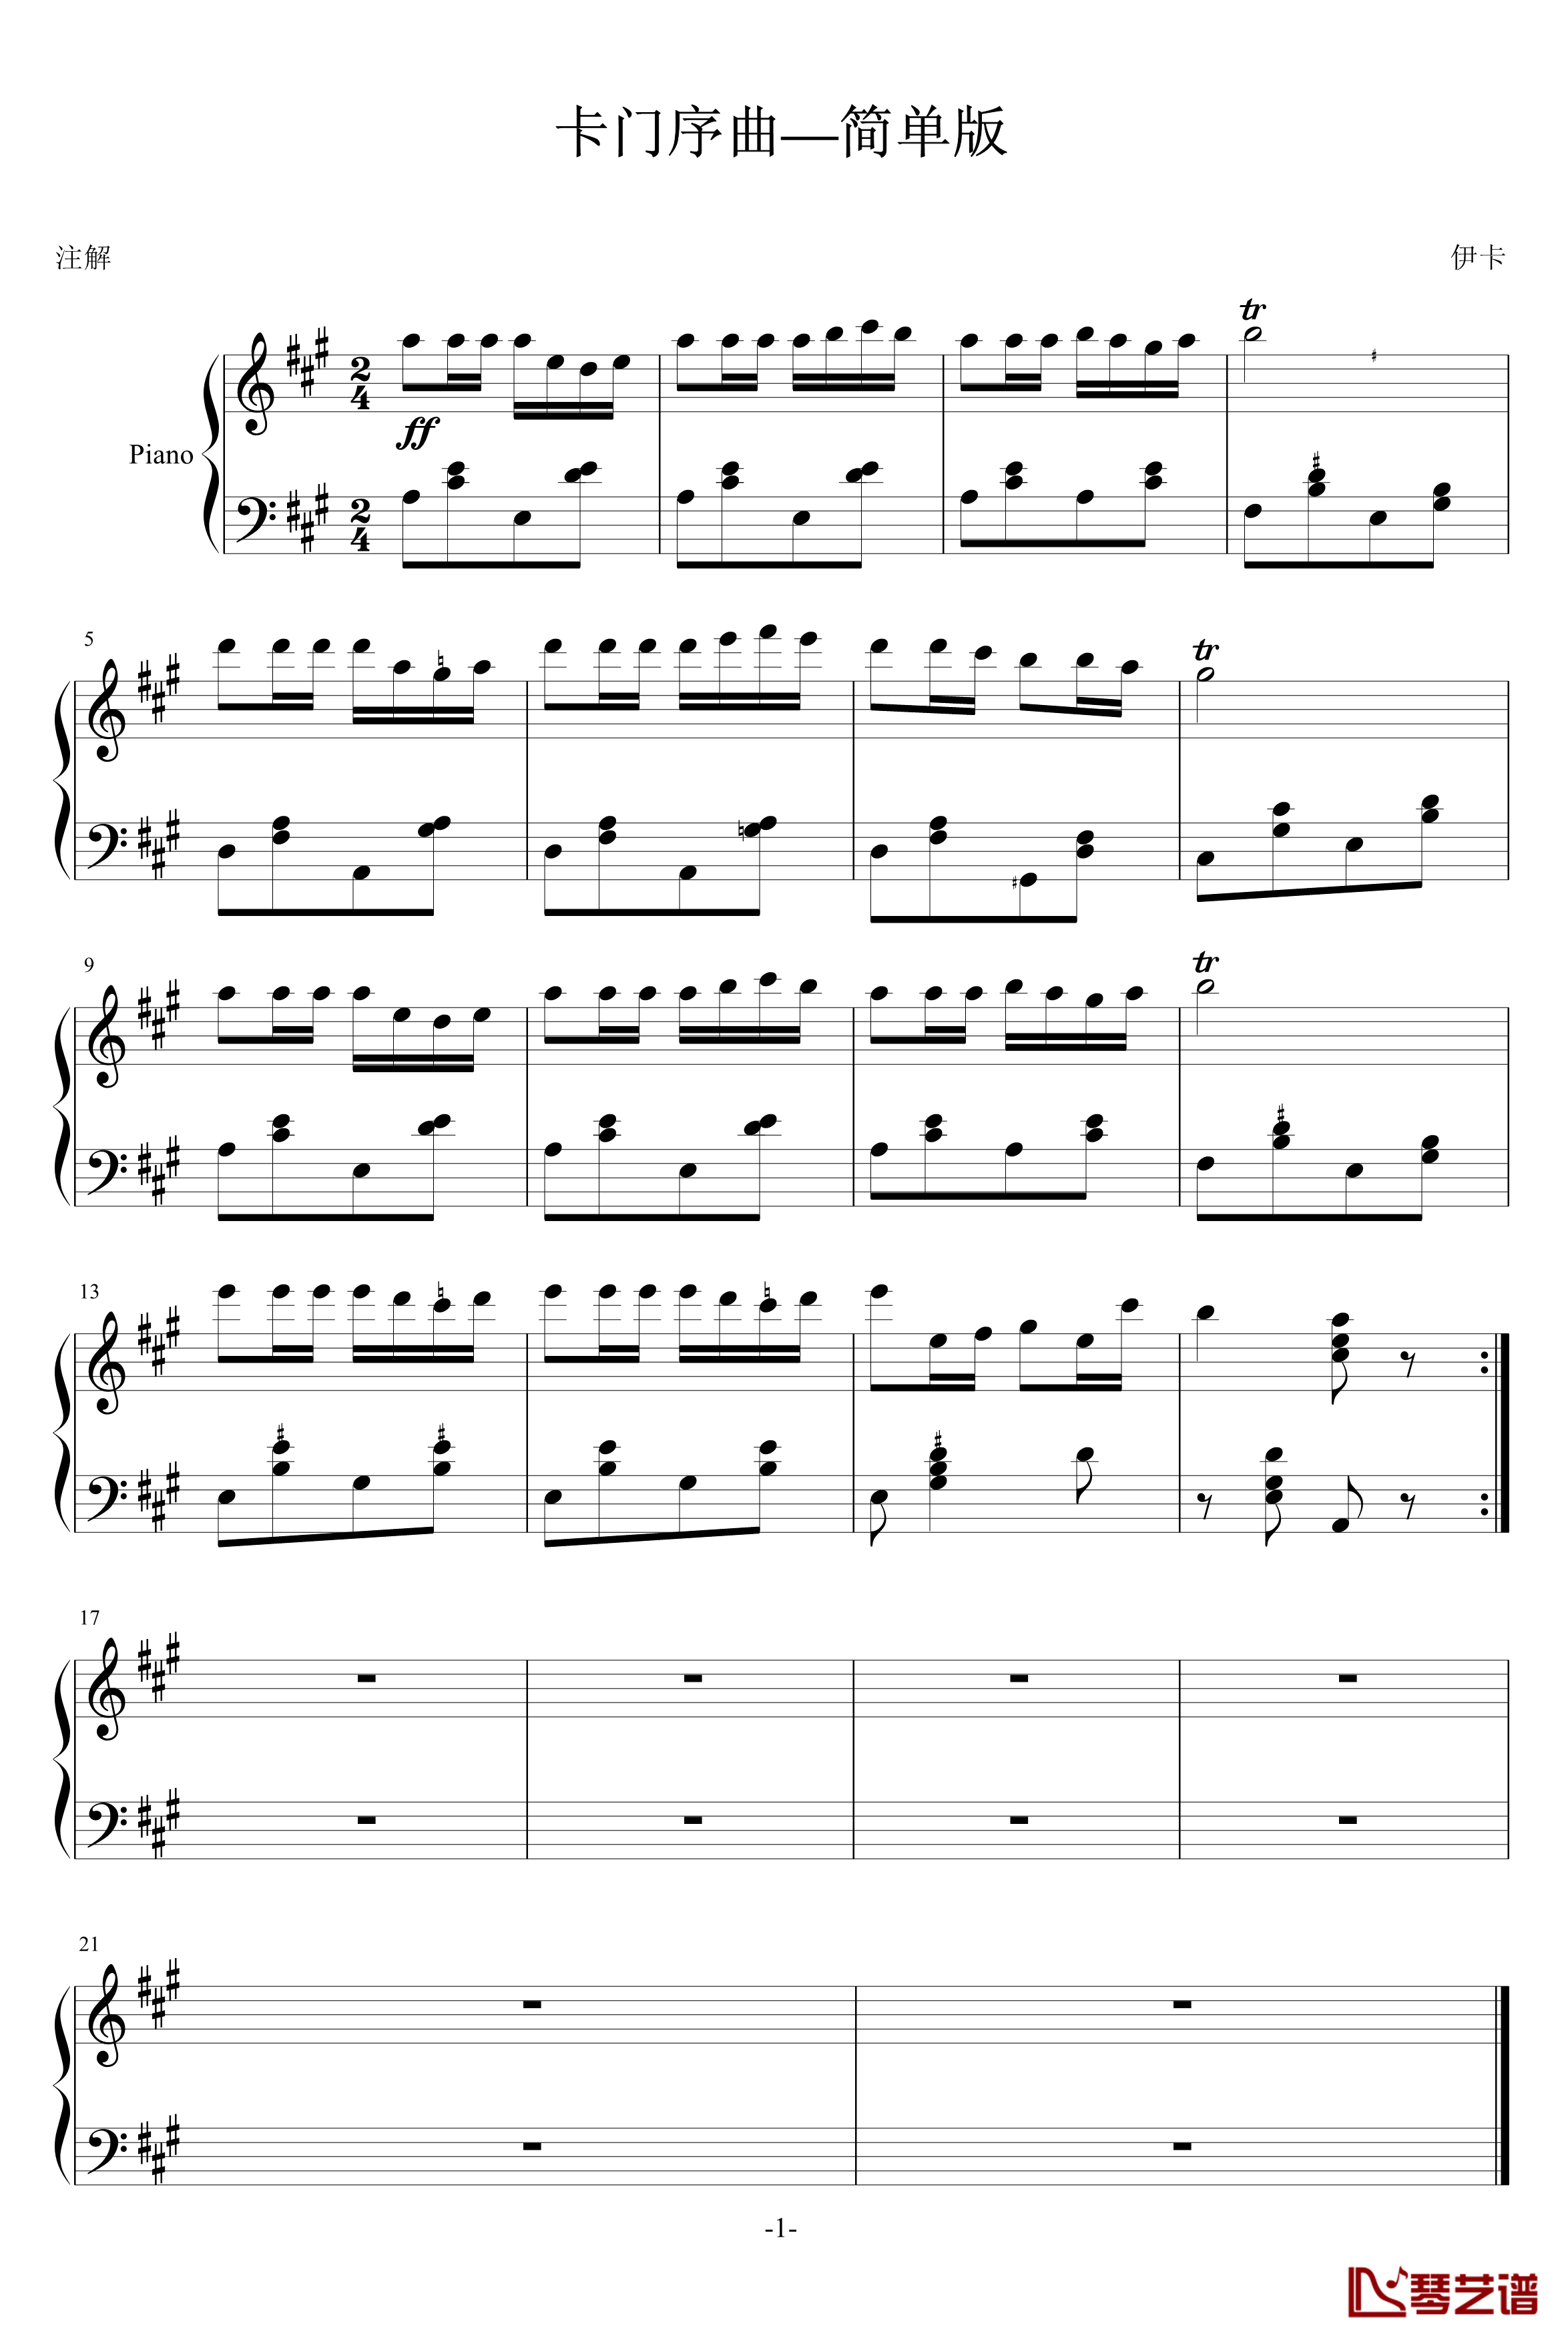 卡门序曲钢琴谱-简单版-比才-Bizet1